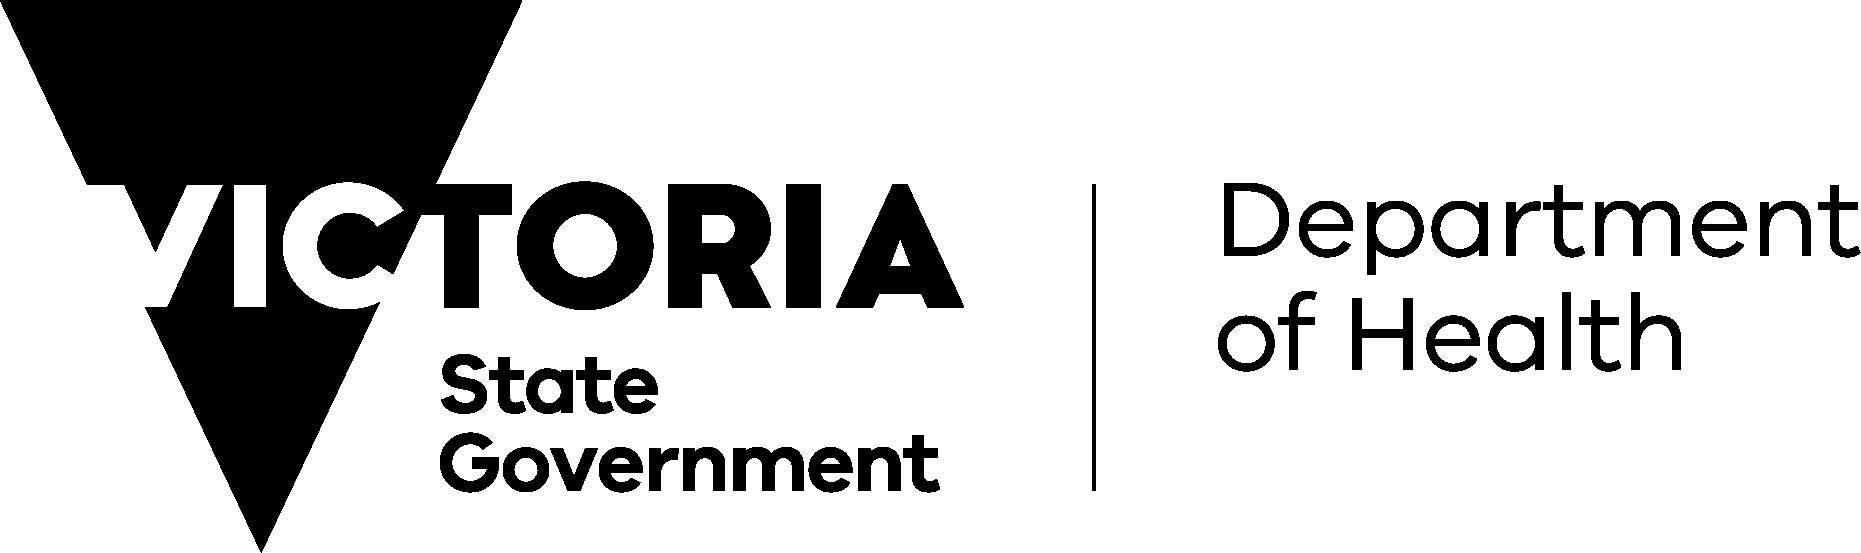 VACCHO logo